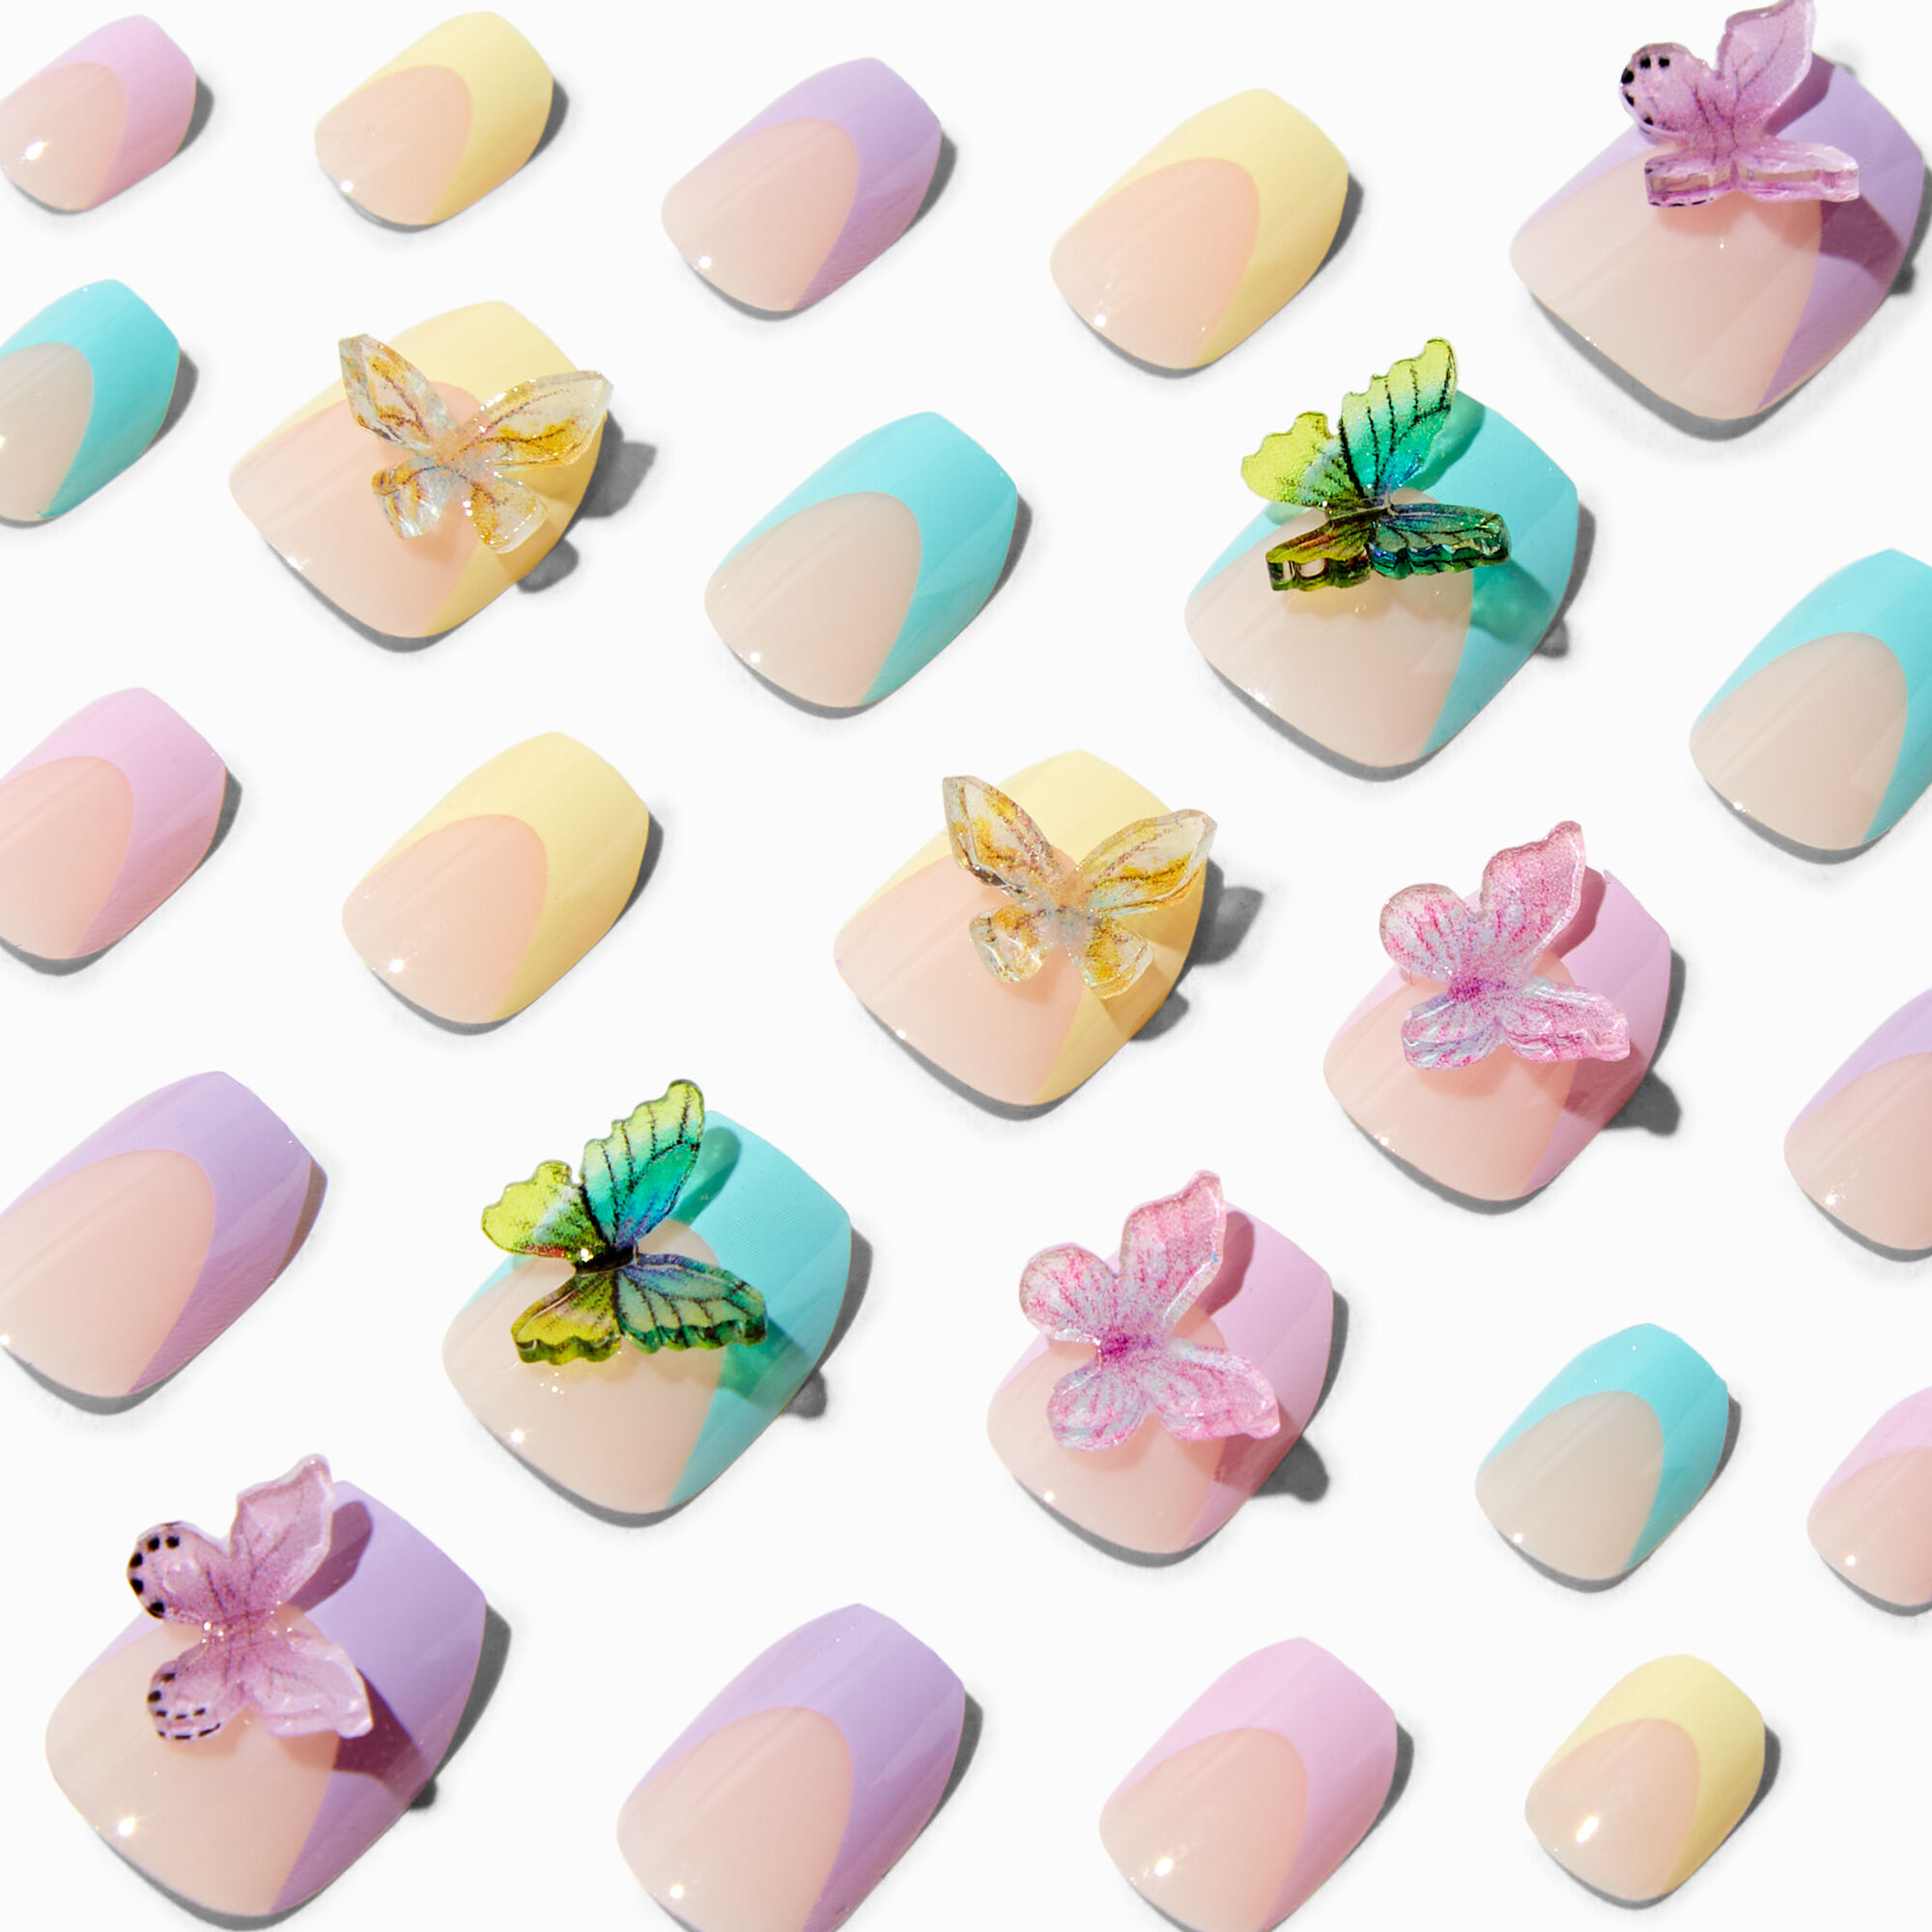 Claire's Faux ongles vegan autocollants ballerine 3D papillon pastel - Lot de 24